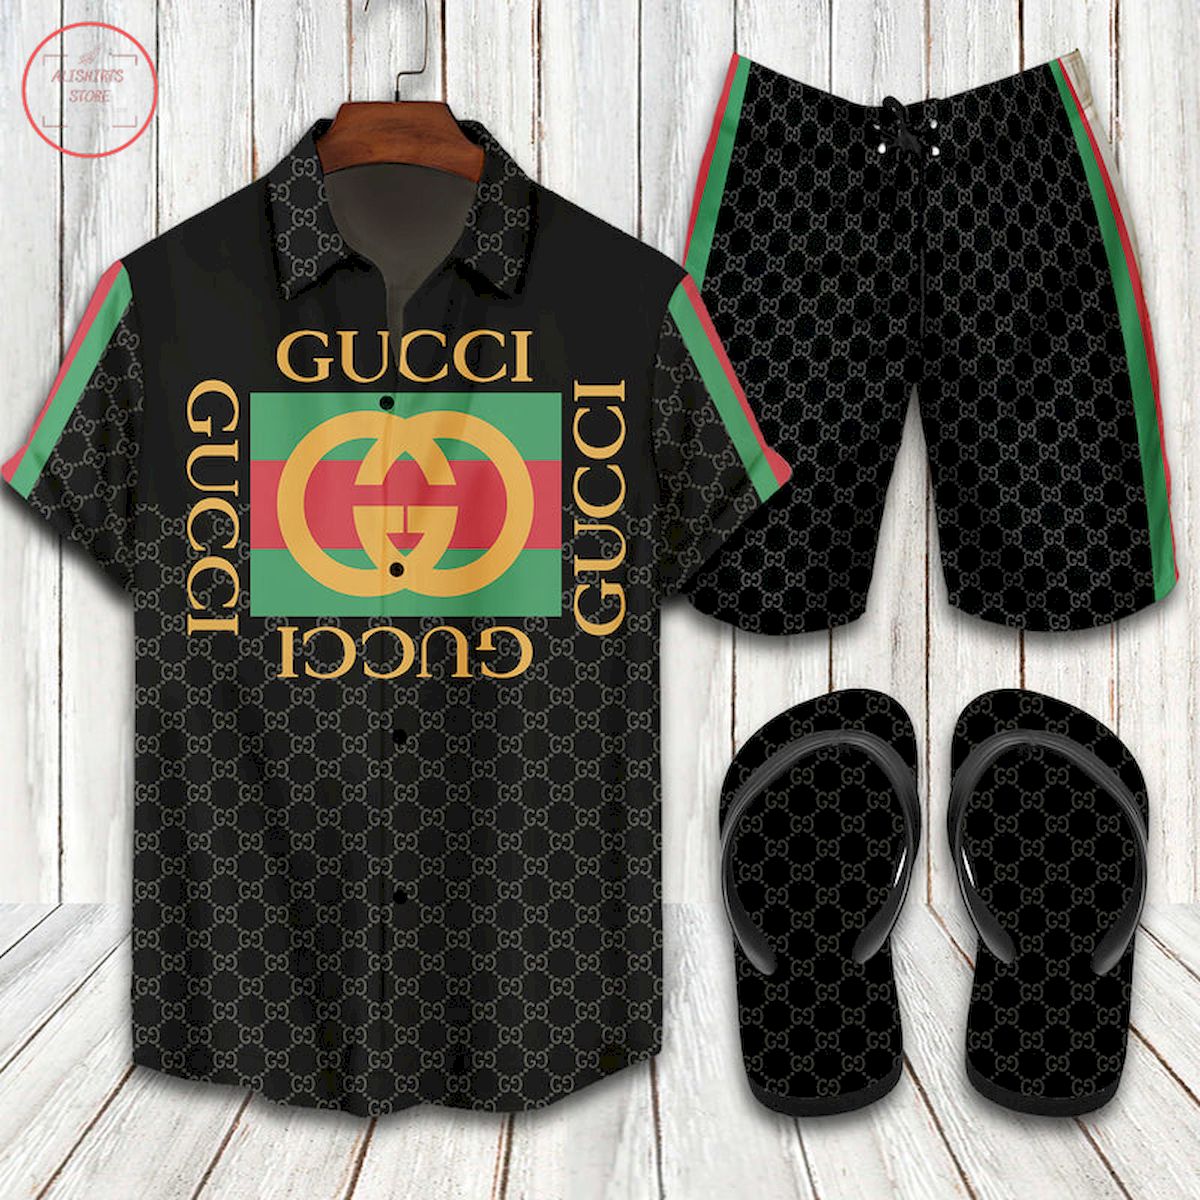 Gucci Italian Luxury brand Hawaiian Shirt Shorts and Flip Flops